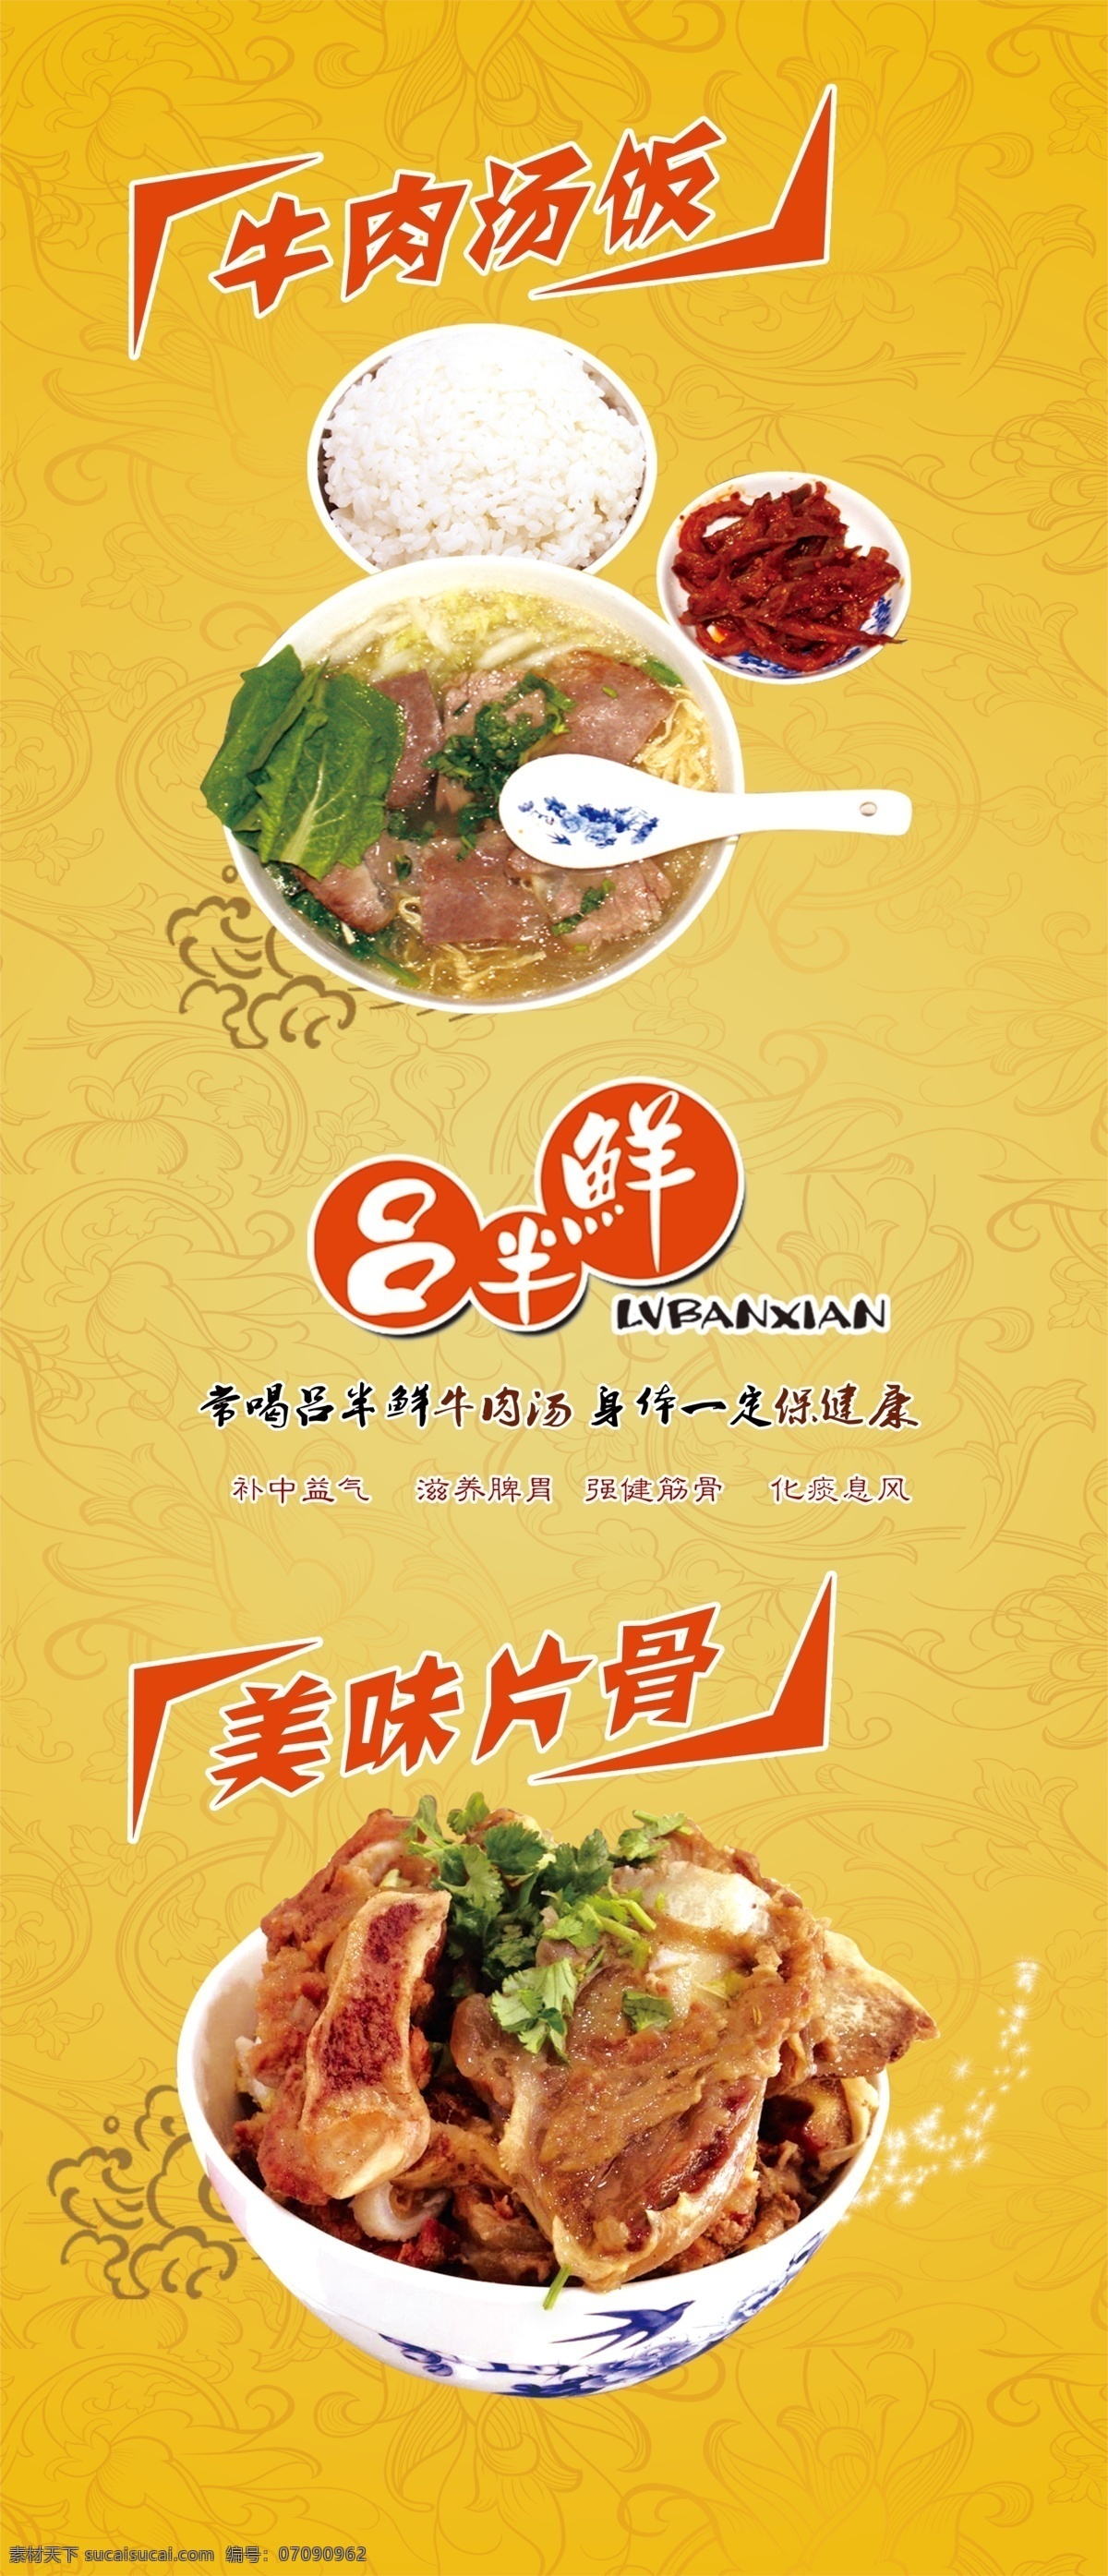 吕 半仙 牛肉 汤 饭 广告 美食广告 牛肉汤饭 美味骨头 原创设计 其他原创设计